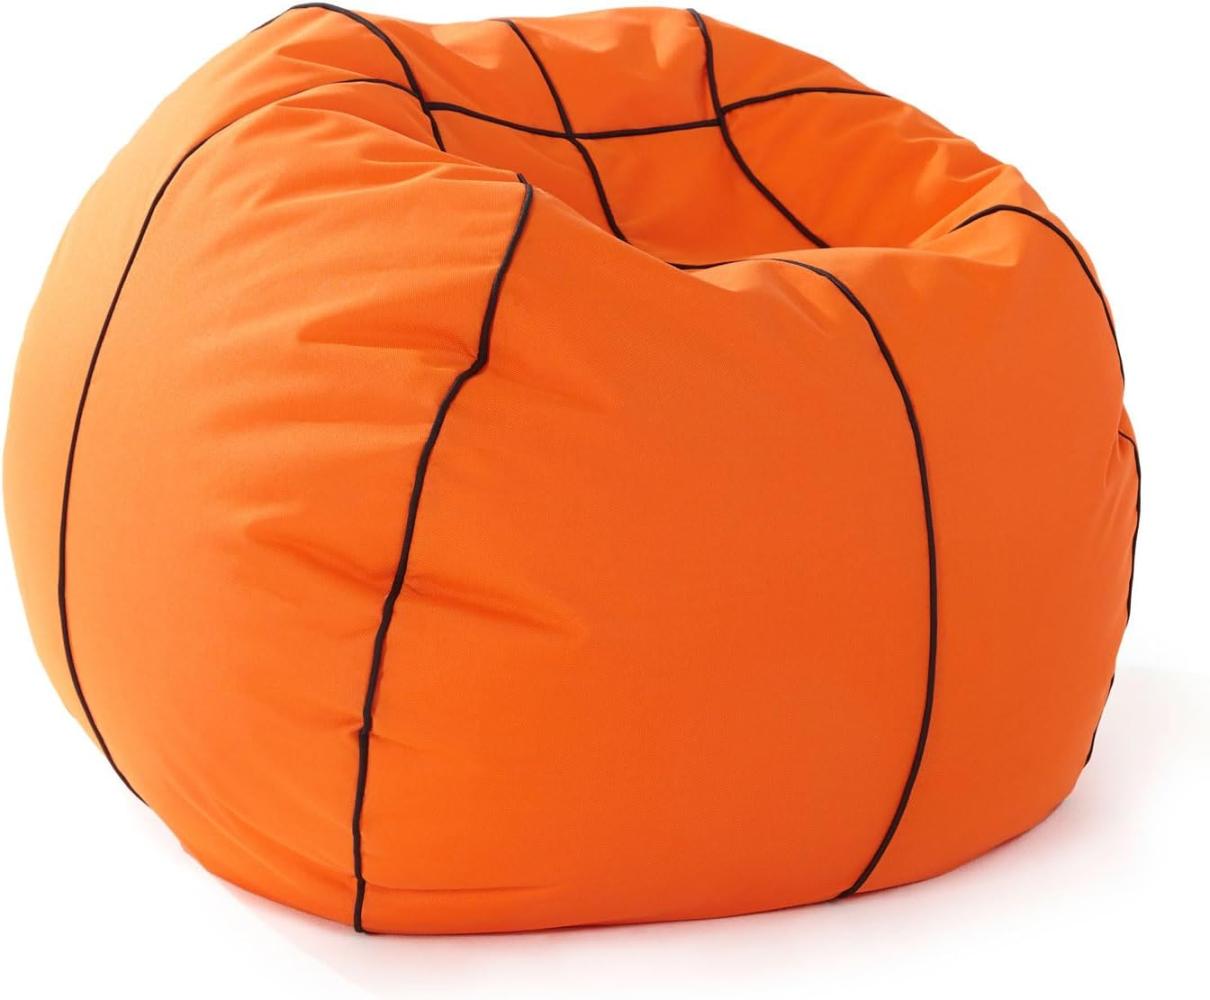 Lumaland Basketball-Sitzsack (90 cm Ø): Der Dunking fürs Sitzgefühl | So geht stilechtes Mitfiebern sowohl Indoor & Outdoor I Mit über 1,5 Mio. anpassungsfähigen EPS-Perlen | Waschbarer Bezug Bild 1